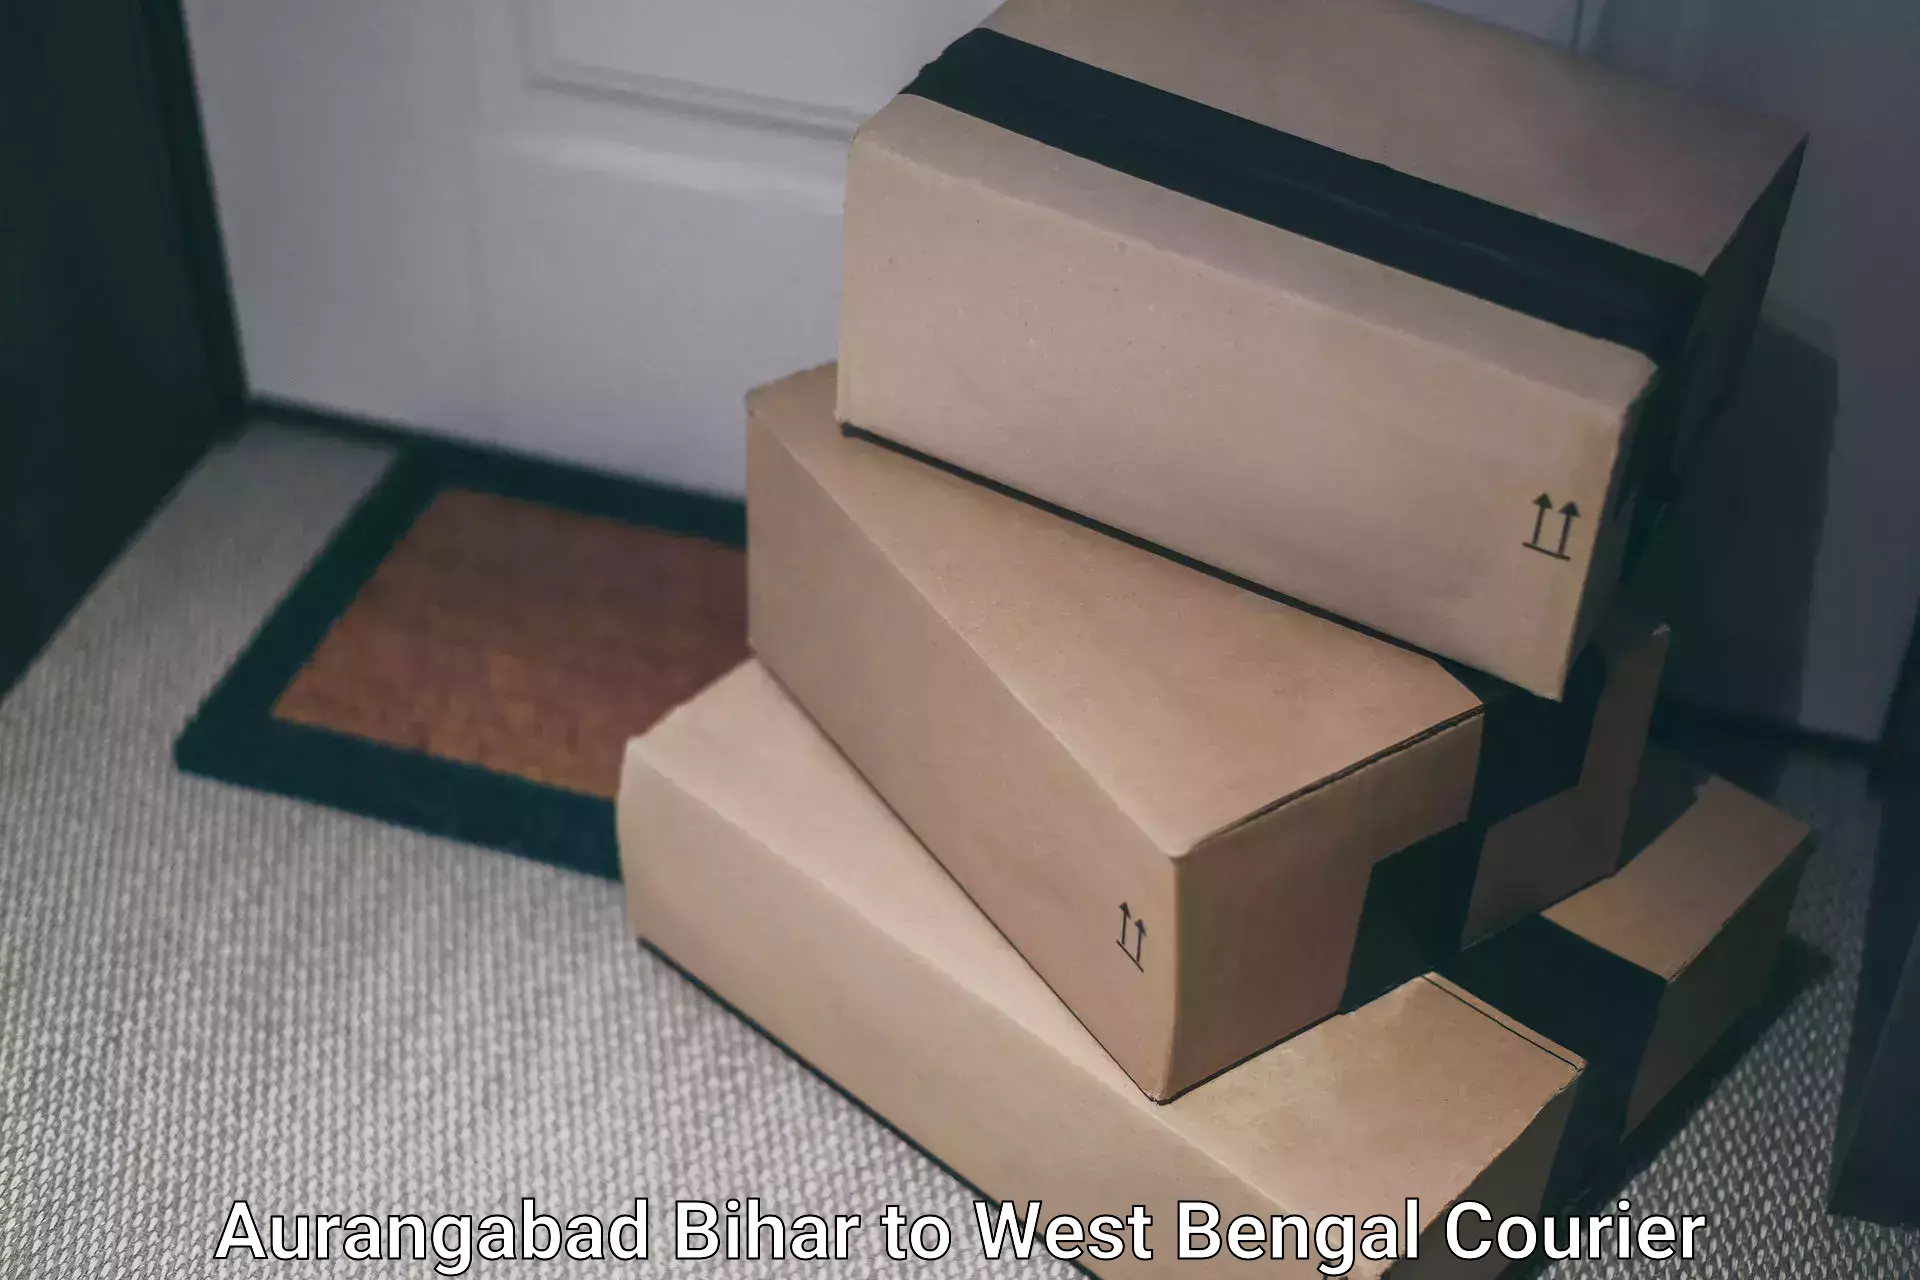 Efficient parcel delivery Aurangabad Bihar to Bankura